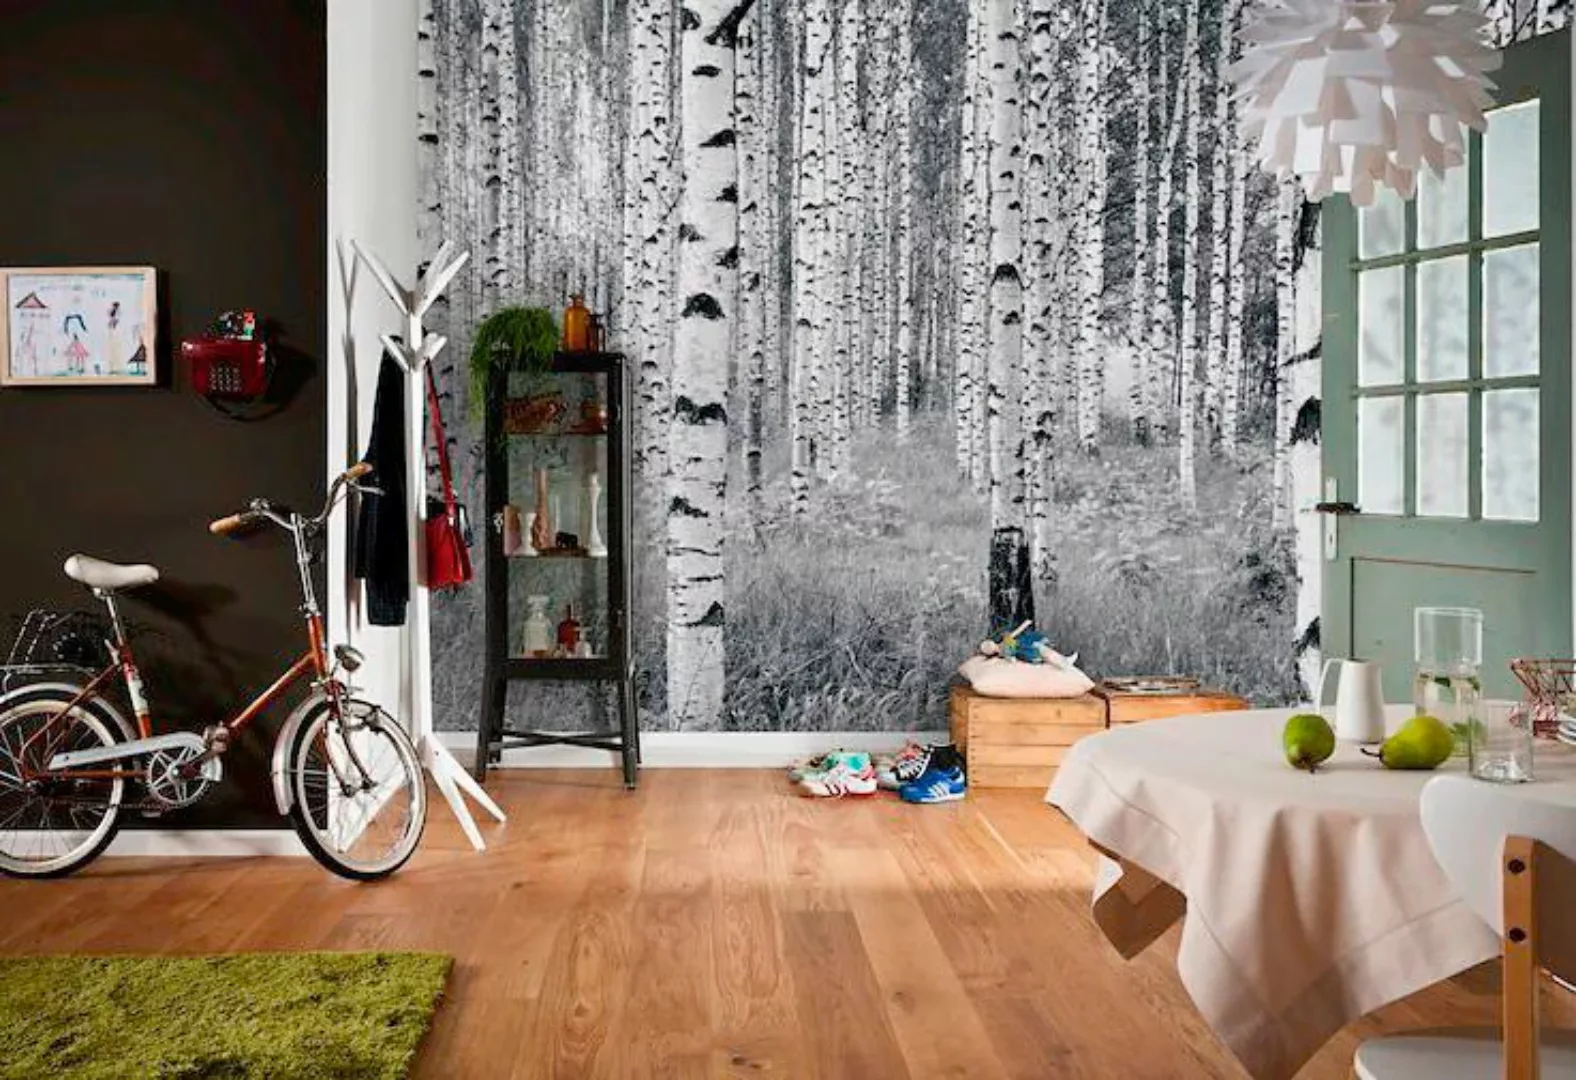 KOMAR Vlies Fototapete - Woods - Größe 368 x 248 cm mehrfarbig günstig online kaufen